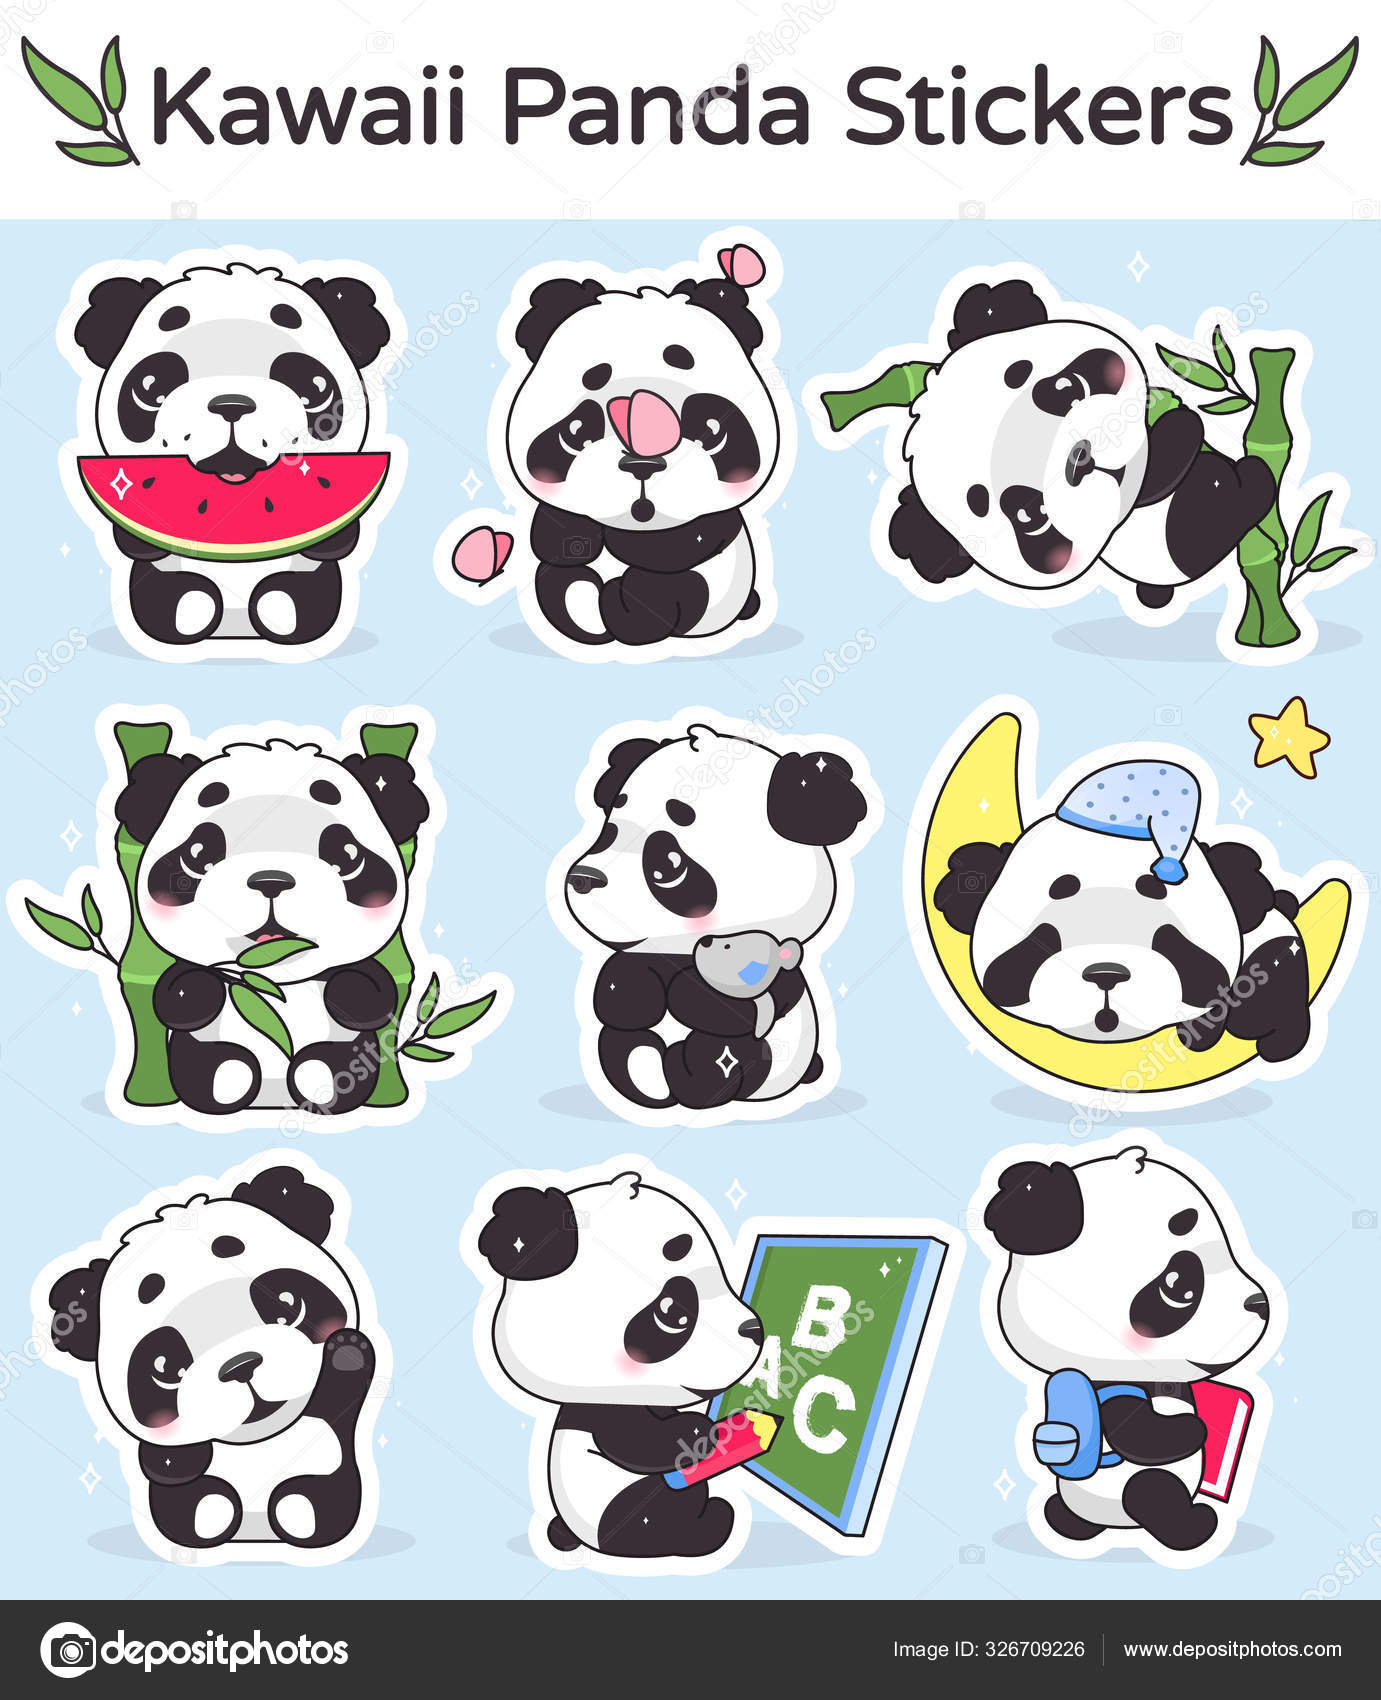 panda bonito comendo personagem de desenho animado de bambu kawaii. animal  adorável, feliz e engraçado desfrutar